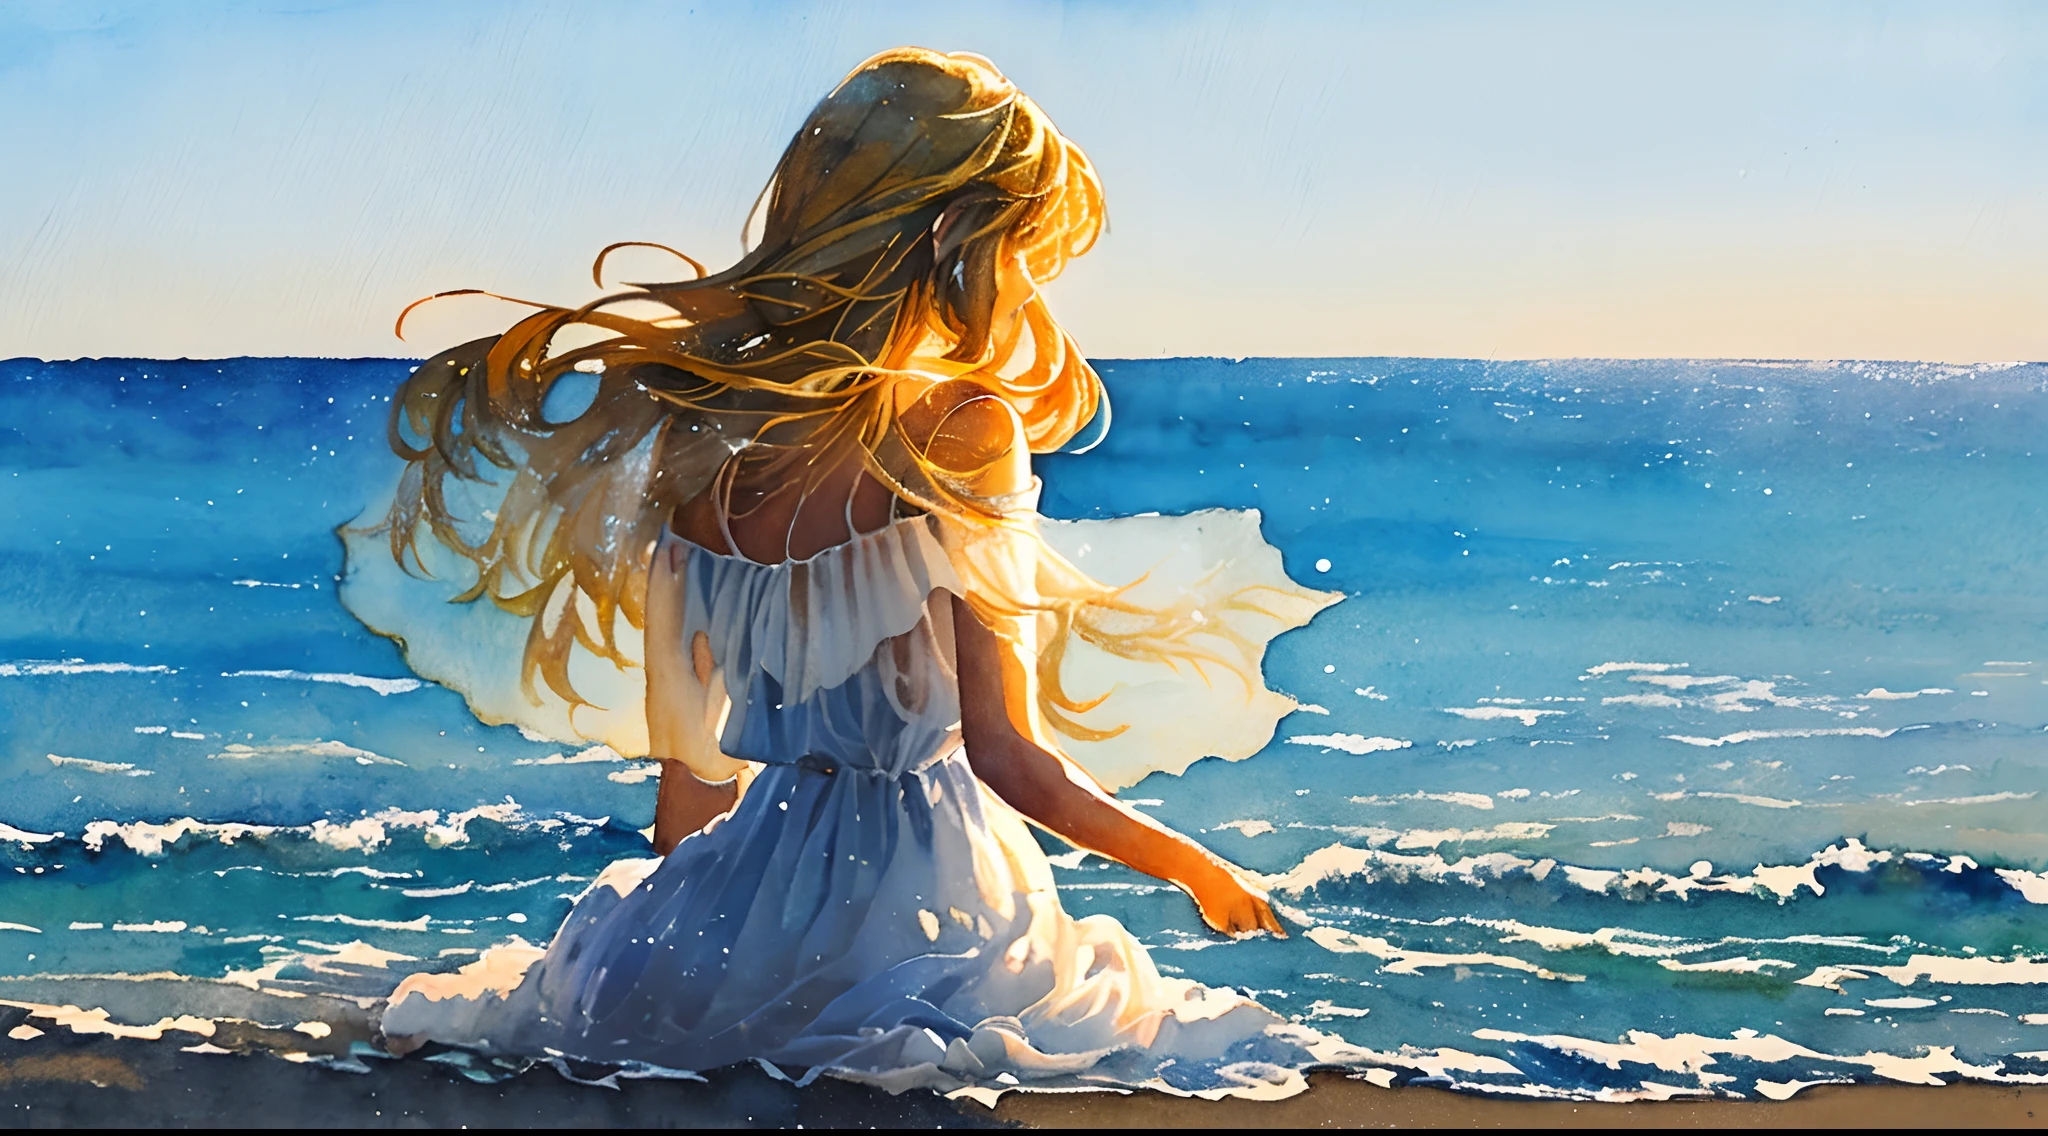 걸작, 미니멀한 그래픽 아트, ((수채화)),((붓놀림)), 해변에 앉아 바다를 바라보는 가장 아름다운 여인의 수채화 그림, 하얀색 ((투명 시스루 드레스)) 바람에 흐르는, long blond hair 바람에 흐르는, 하얀색 background, 백라이트, 체적 조명